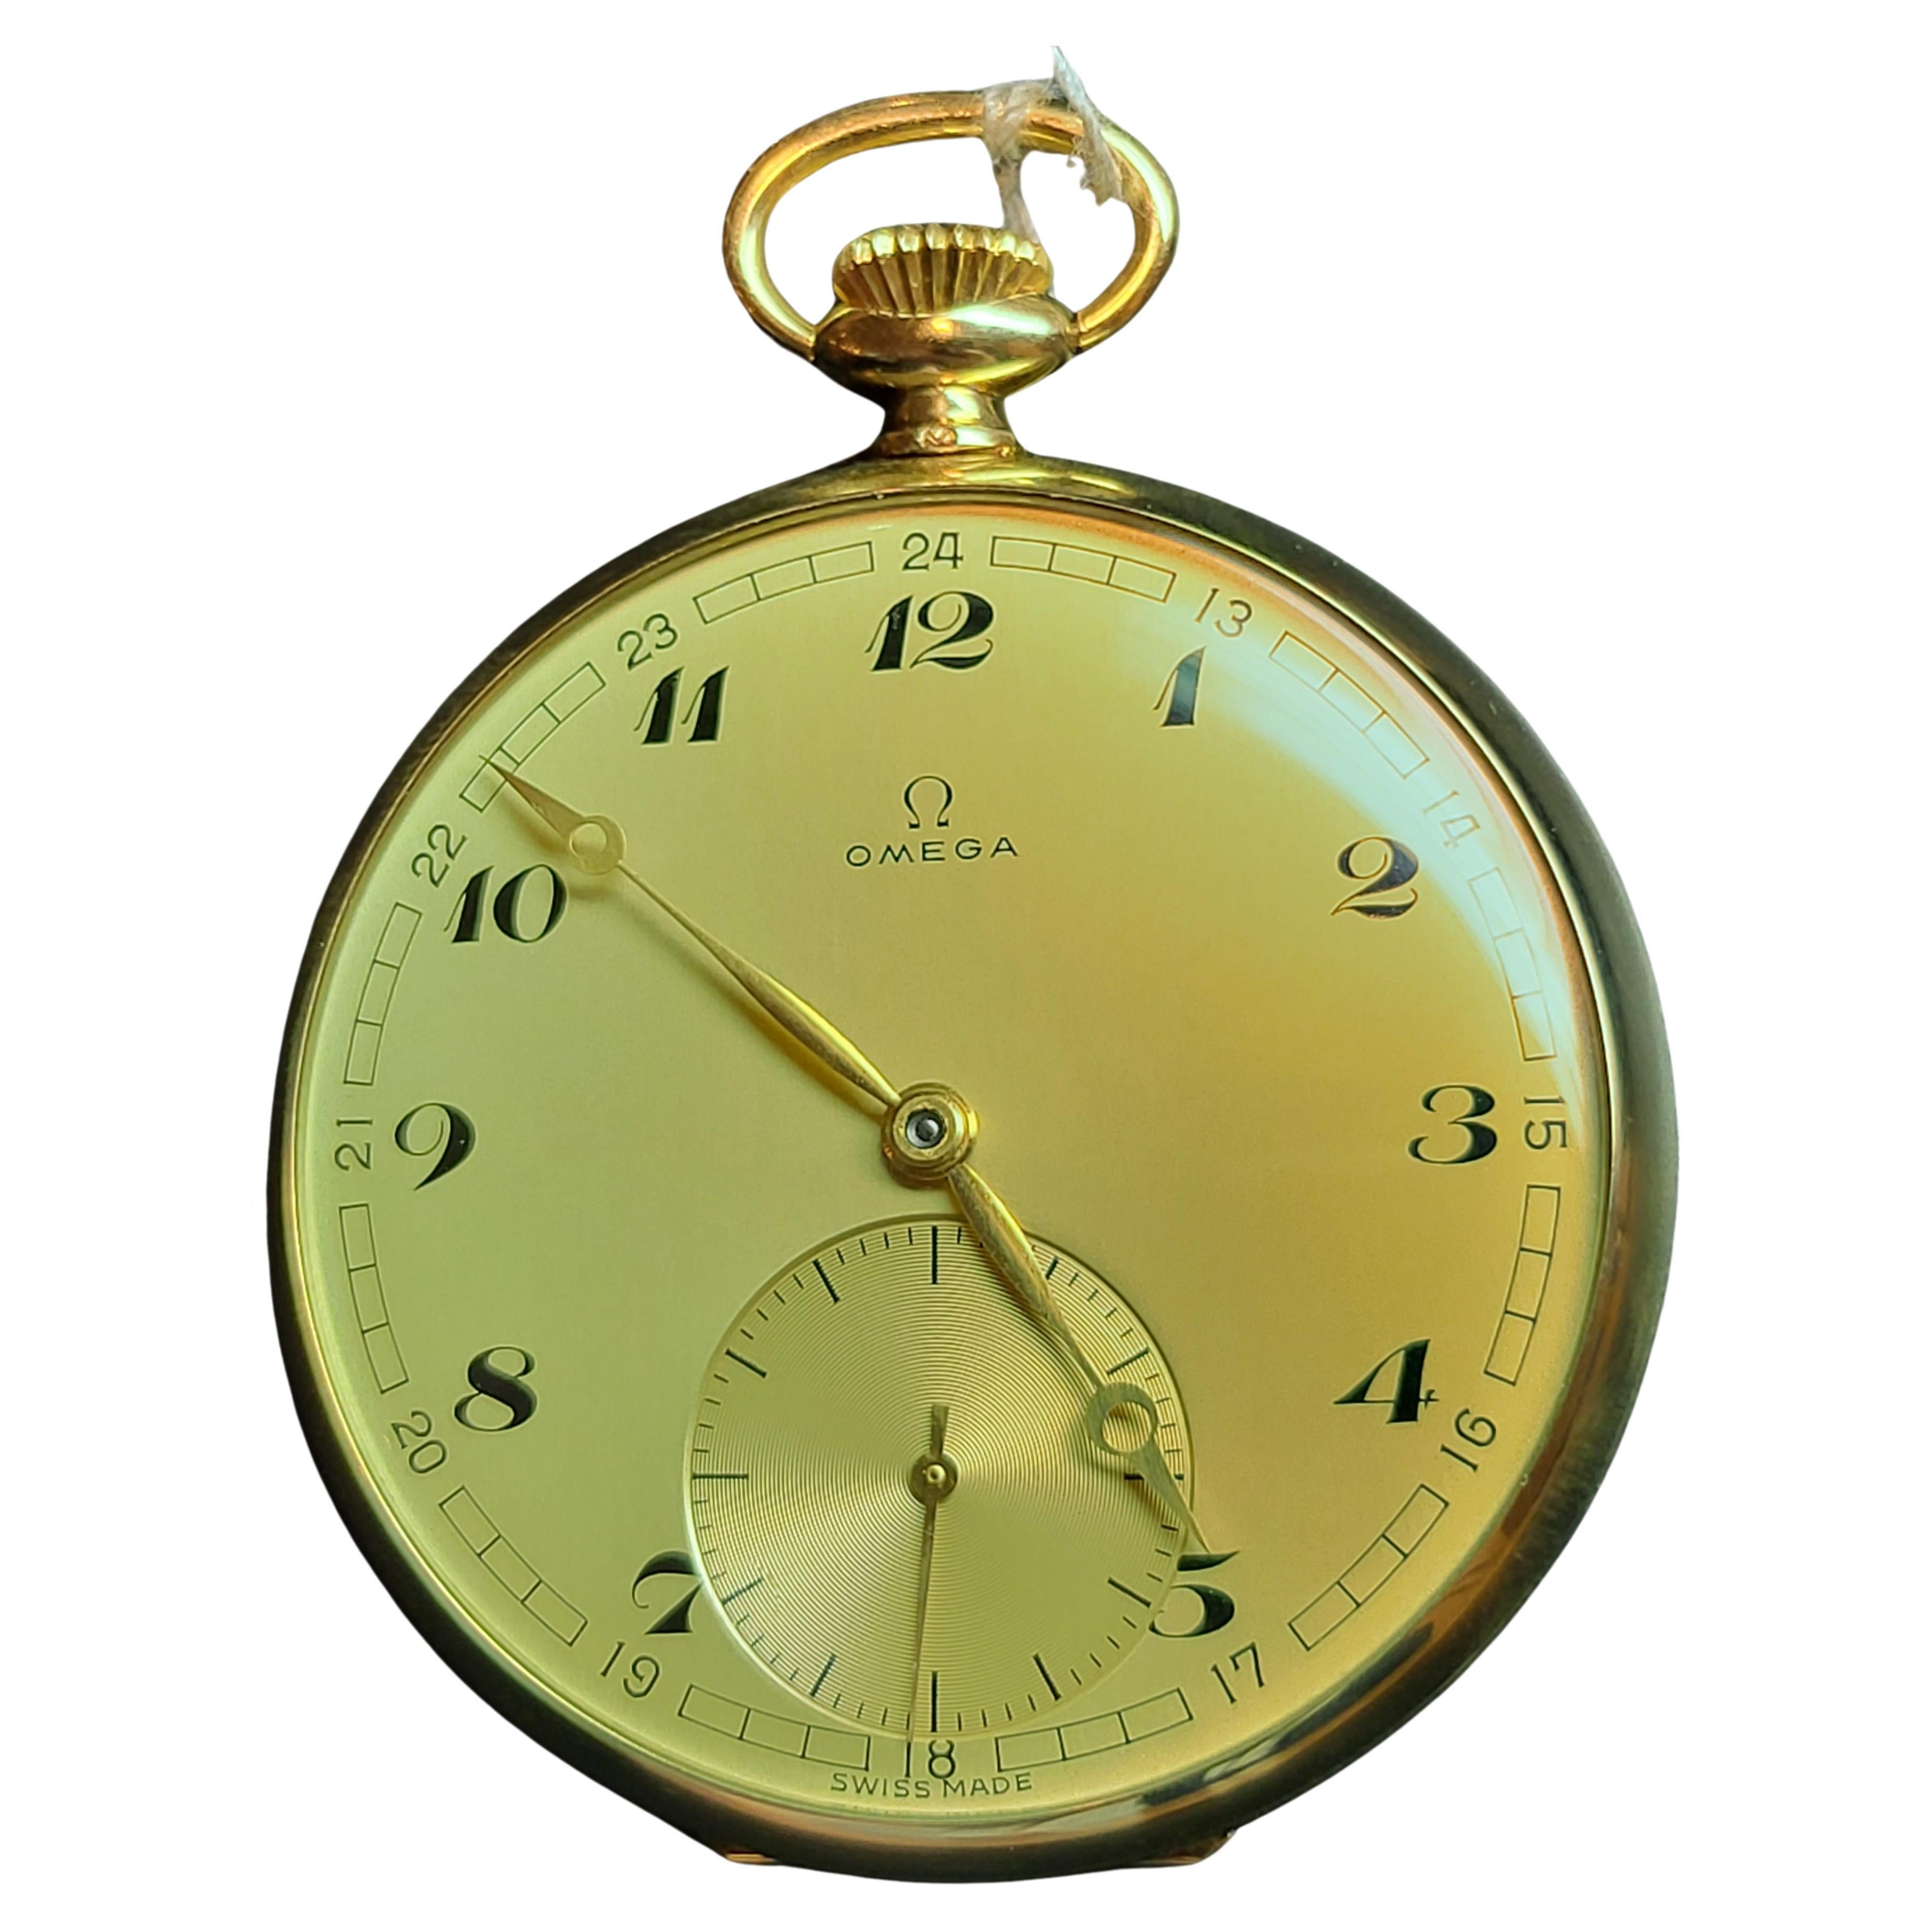 In ausgezeichnetem Zustand 14kt Gelbgold Omega Taschenuhr, Kaliber 163, Gold Zifferblatt

Kaliber: 163

Uhrwerk: Das Uhrwerk ist signiert Omega Swiss, 17 Jewels, Kaliber 163, und die Seriennummer. Das Uhrwerk ist durch eine innere Metallabdeckung